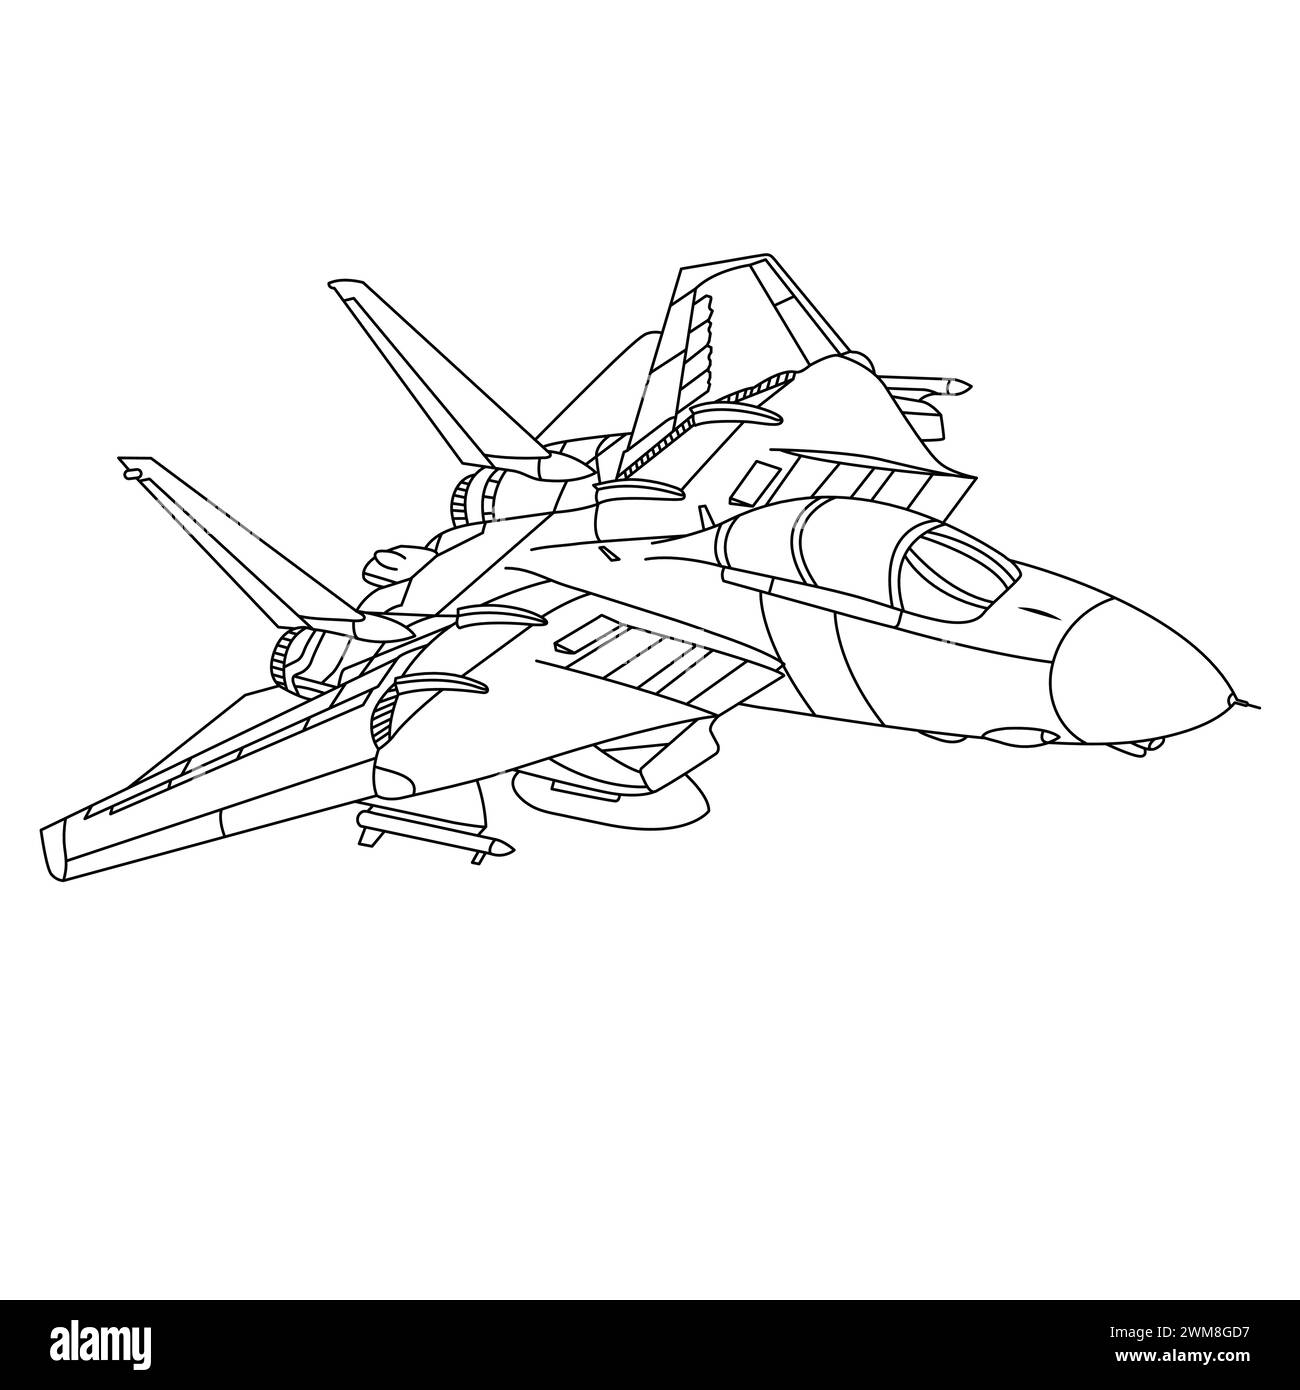 Militärflugzeug F-14 Tomcat Gliederung Illustration. Fighter Jet F14 Malbuch für Kinder und Erwachsene. Cartoon Flugzeug isoliert auf White Backgrou Stock Vektor